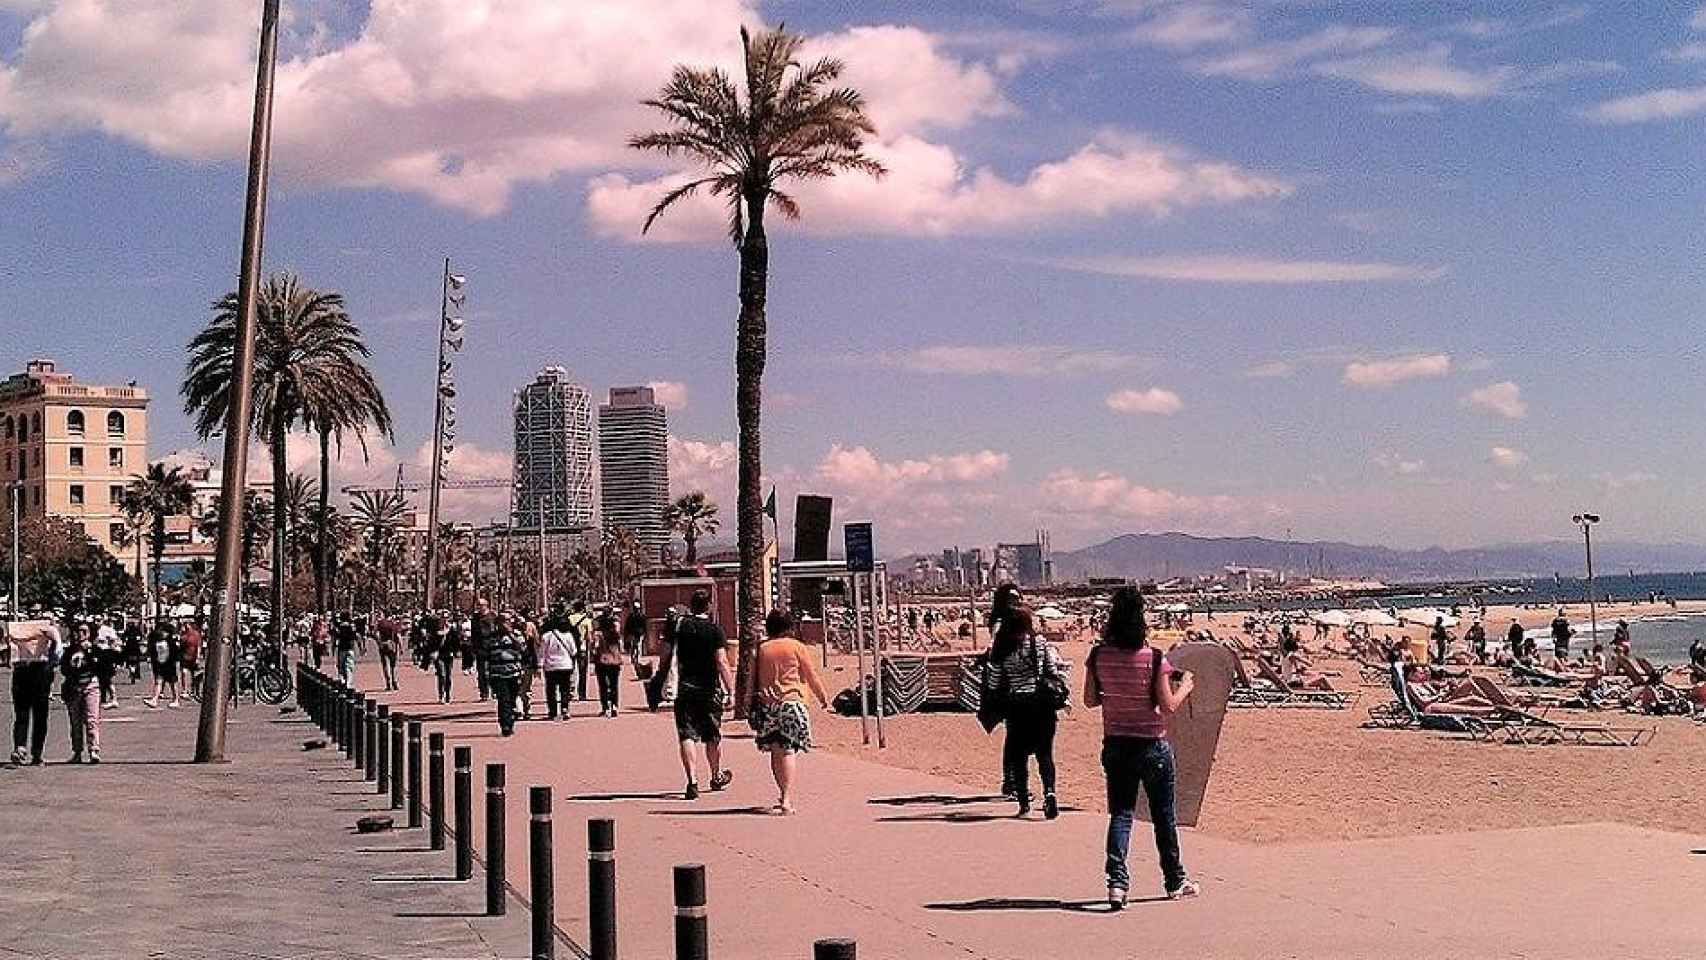 Playas de Barcelona, donde se acoge la iniciativa del Cinema Lliure a la Platja 2020 / Gorpol EN PIXABAY